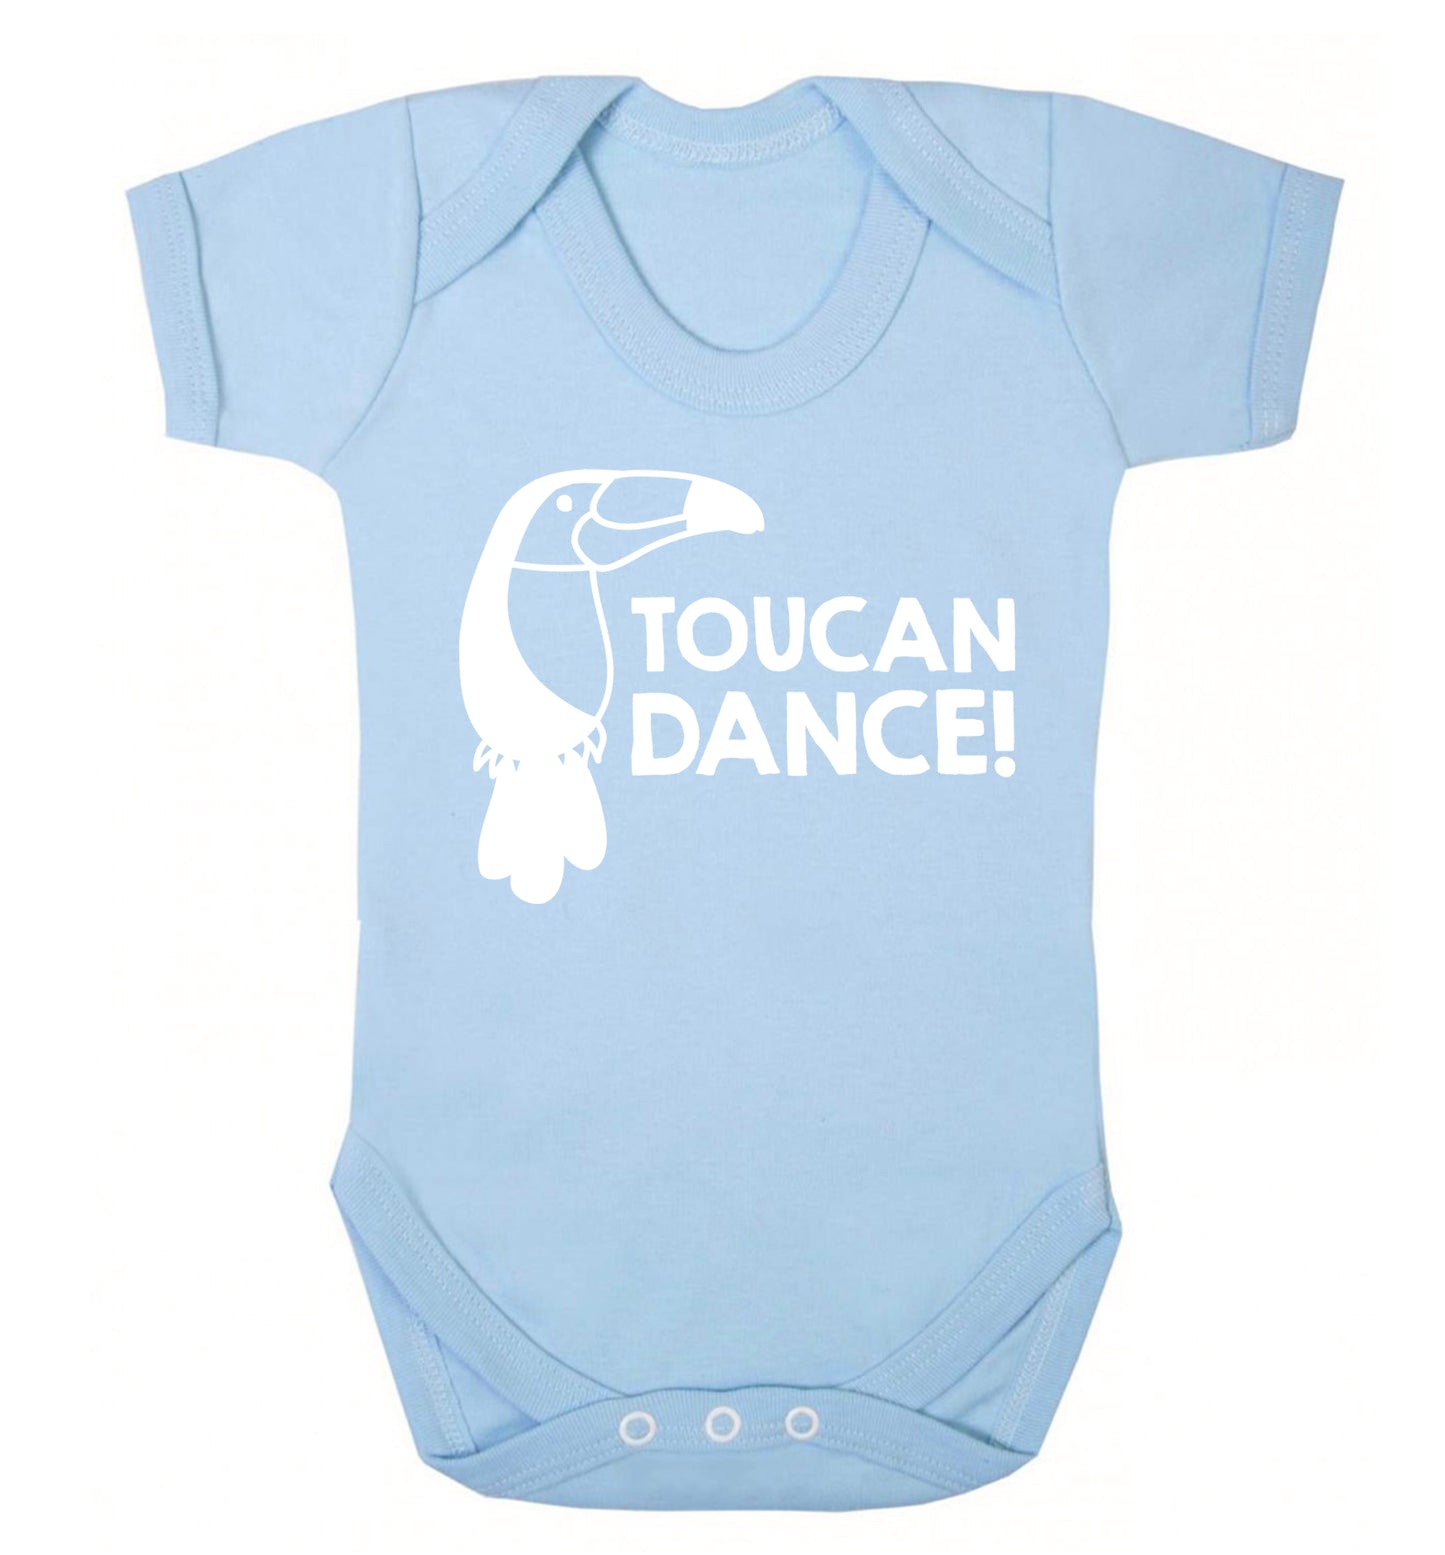 Toucan dance Baby Vest pale blue 18-24 months